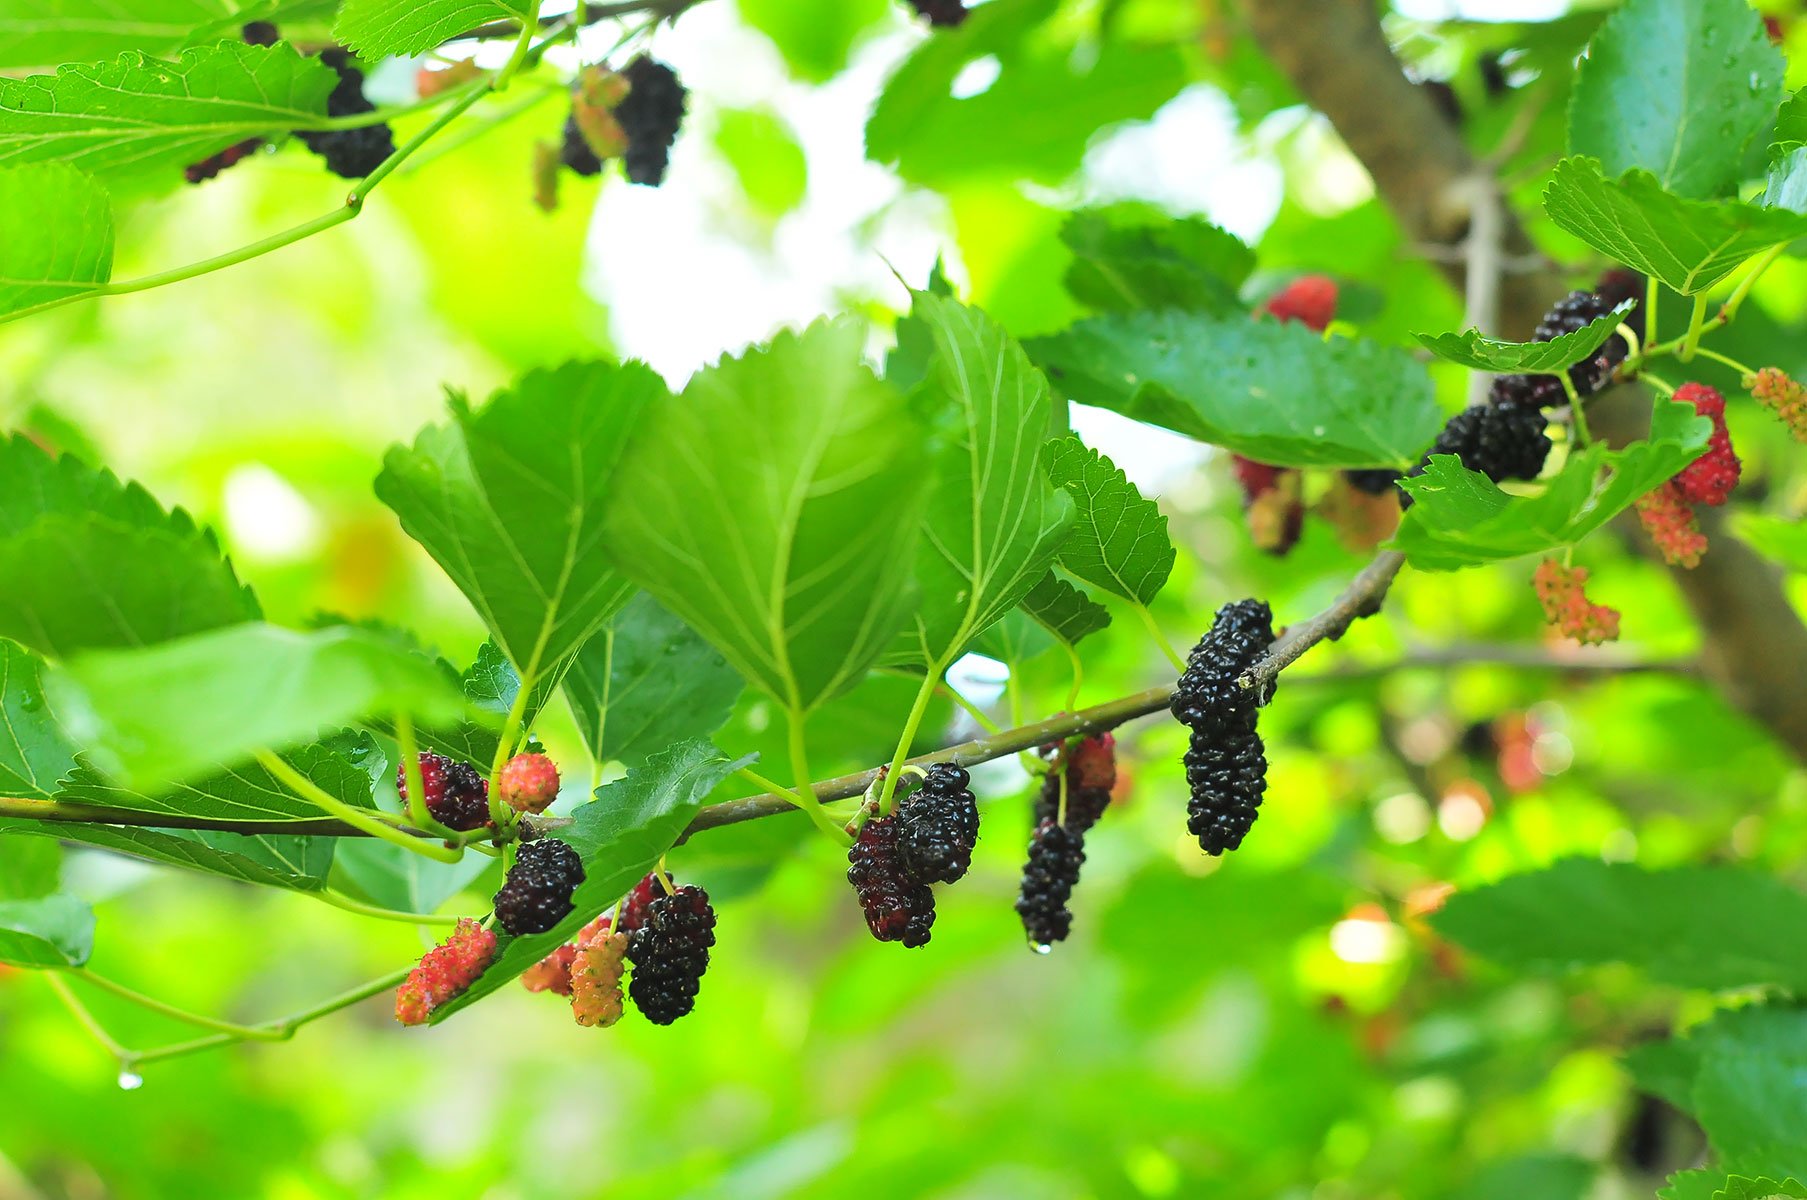 Шелковица фото дерева с ягодами